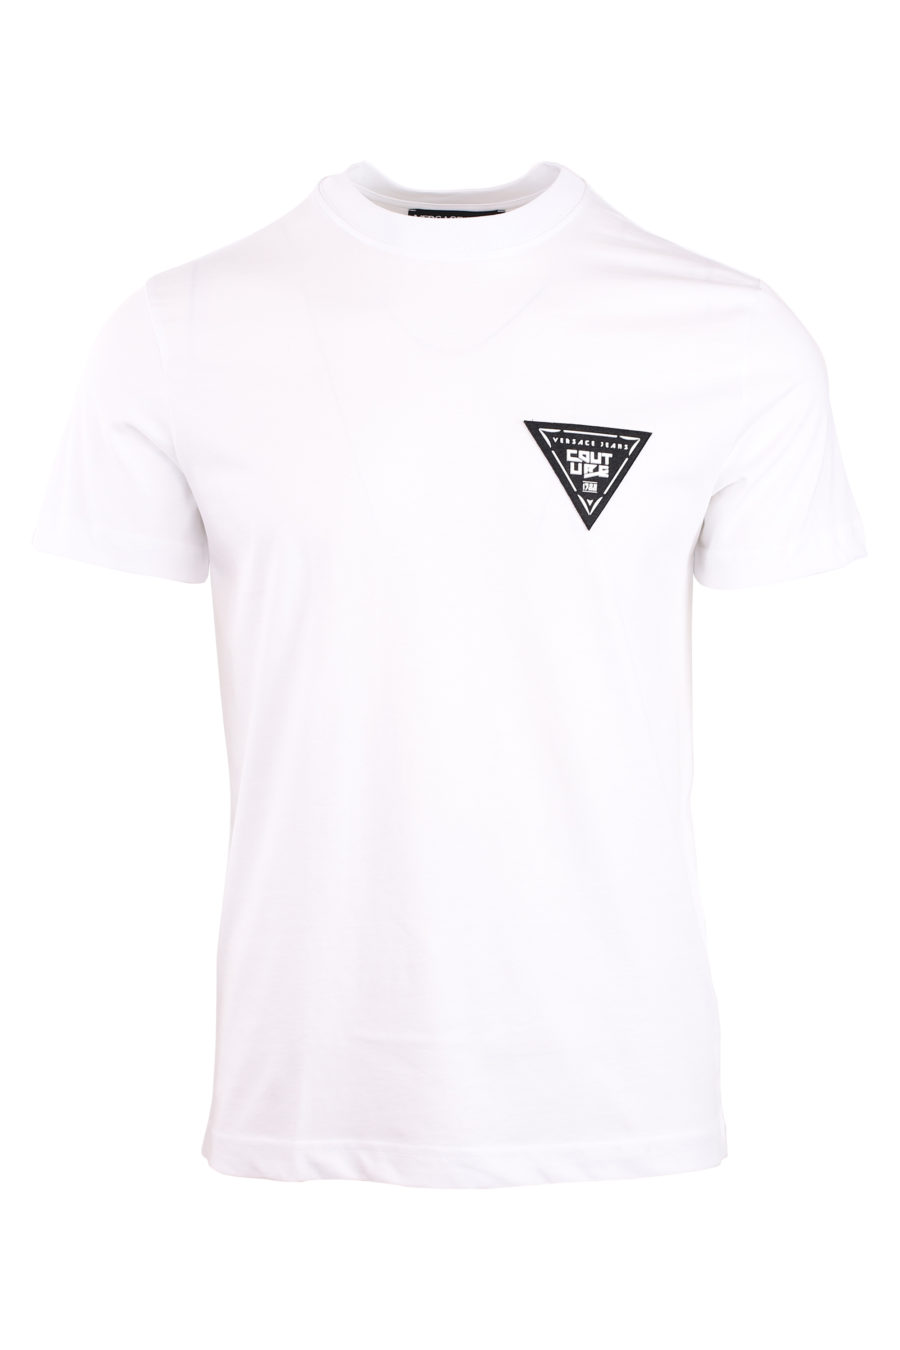 T-shirt branca com um pequeno logótipo triangular - IMG 0753